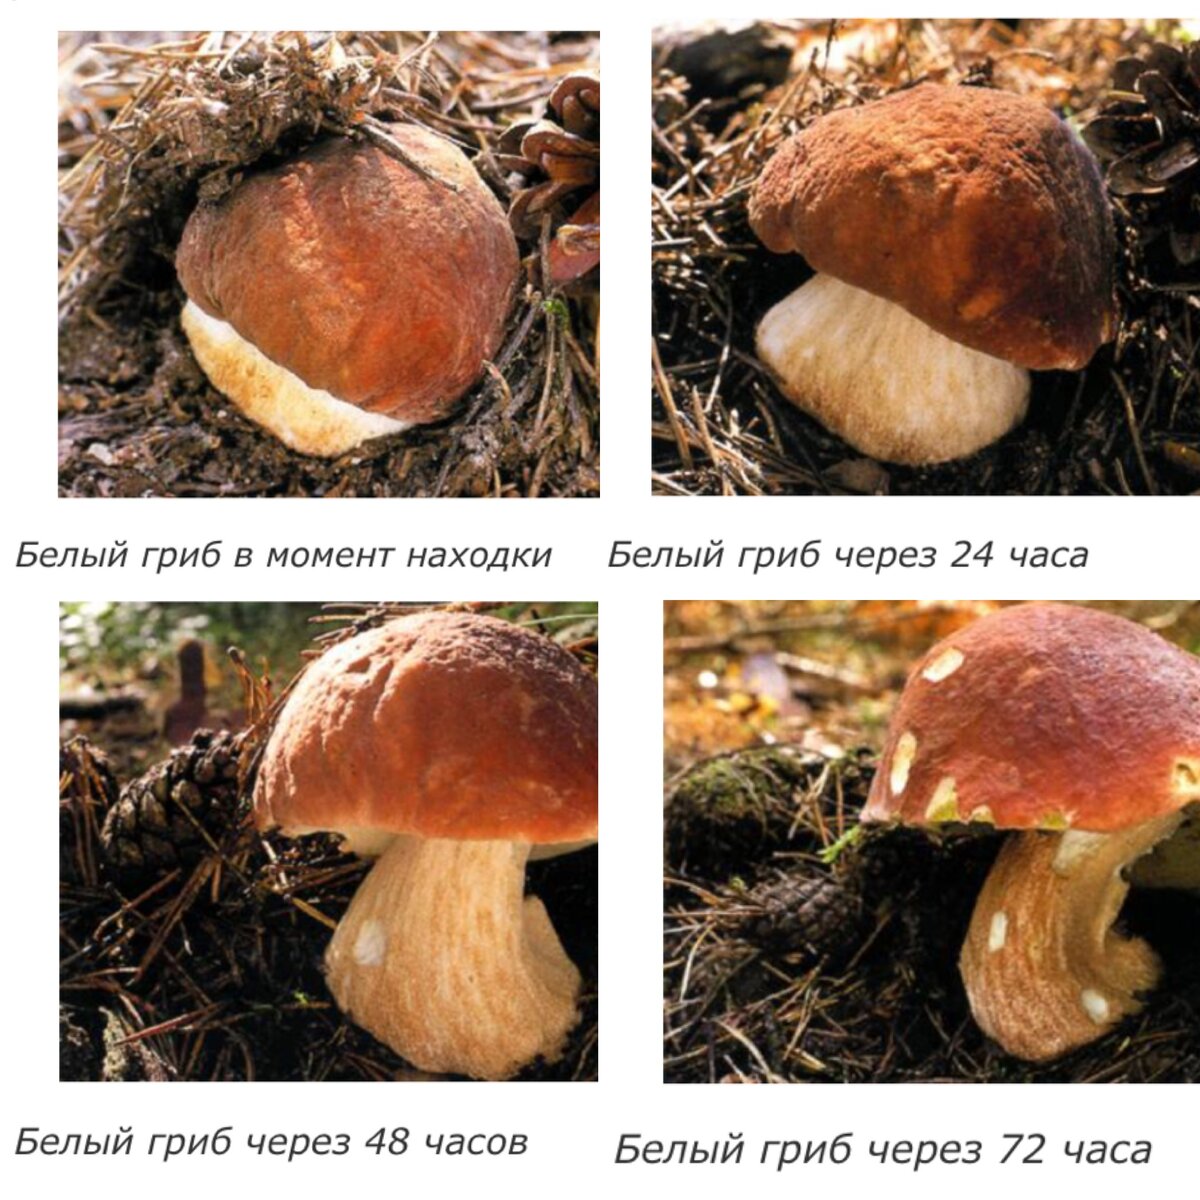 Распространенные грибы